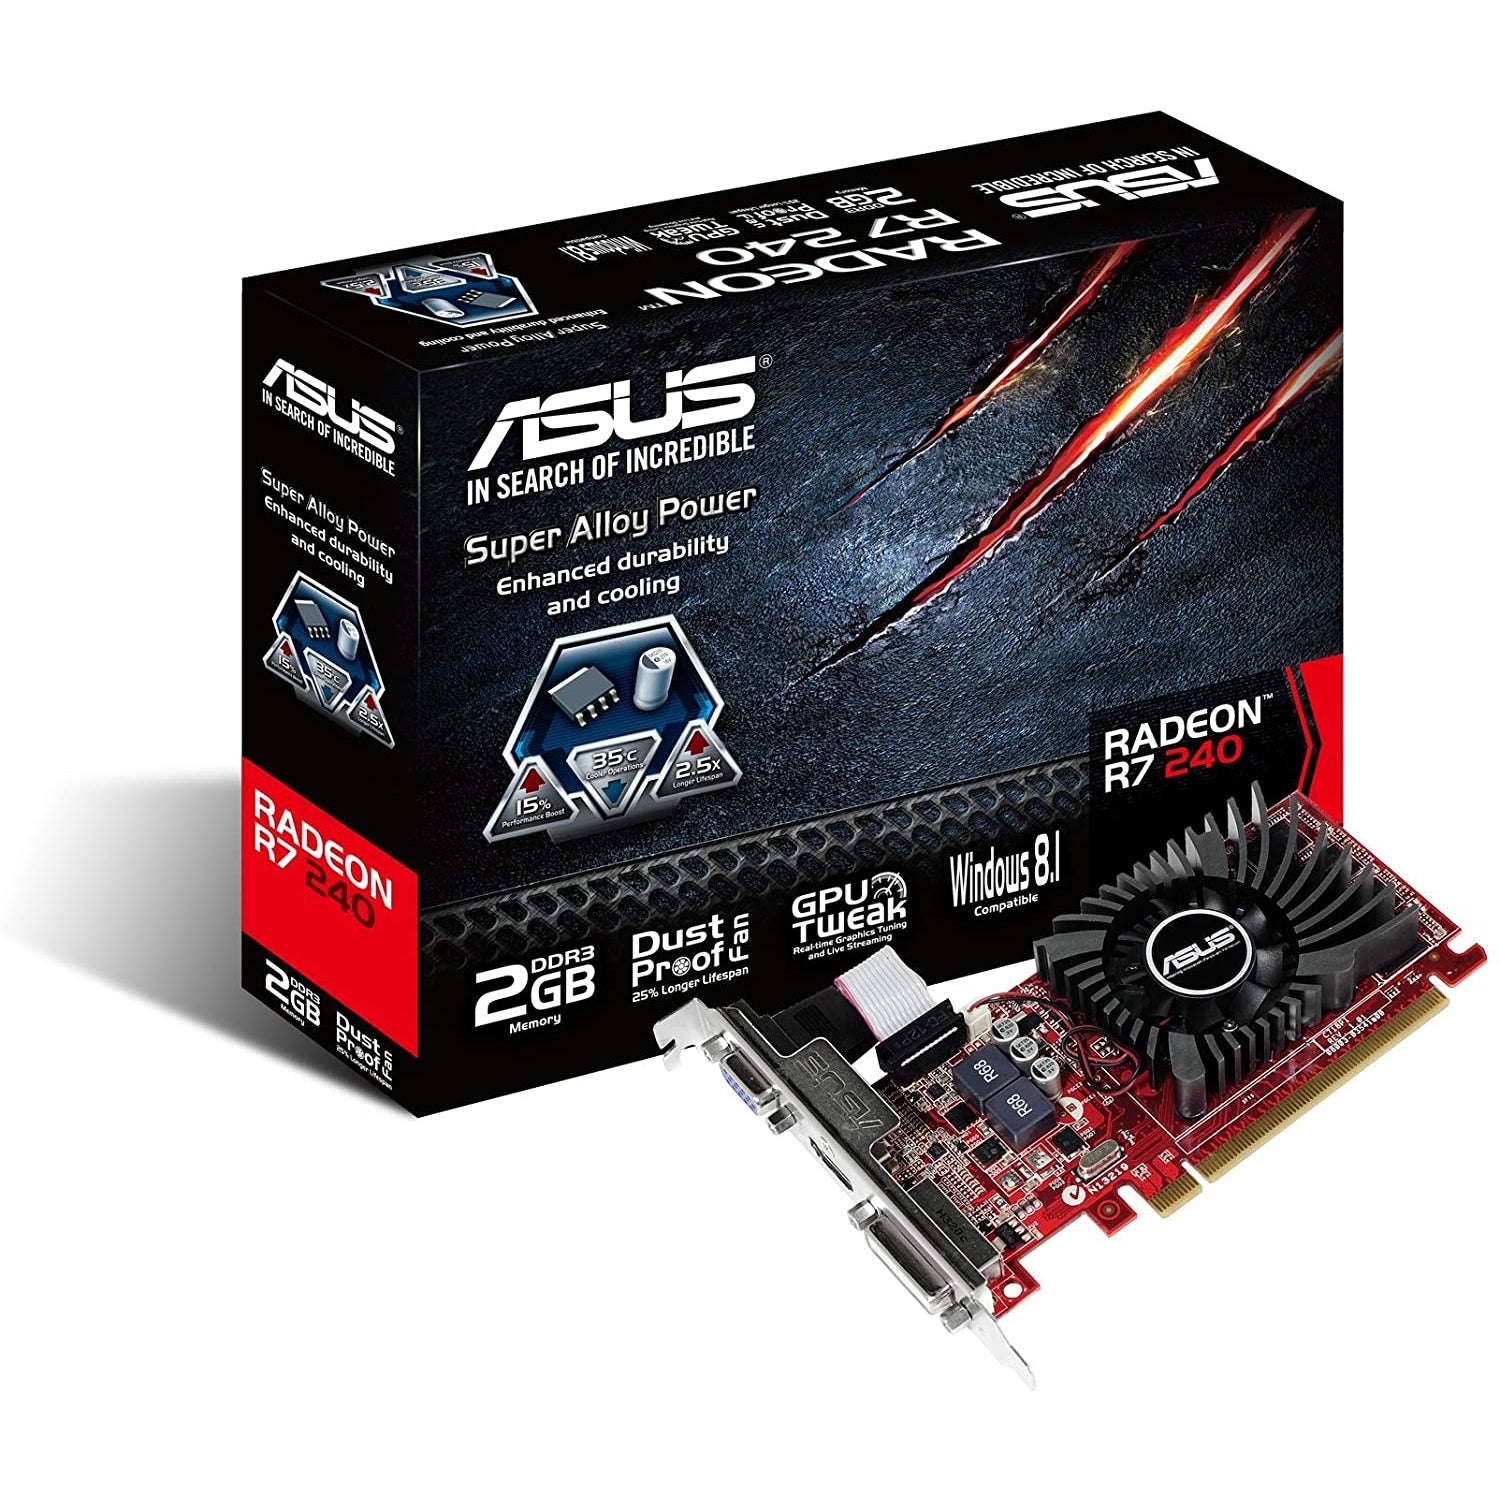 ASUS AMD Radeon R7240 2 GB DDR3 Graphics Card (PCI Express 3.0, HDMI, DVI-D, 128-Bit, Dust-Proof Fan, GPU Tweak Utility)